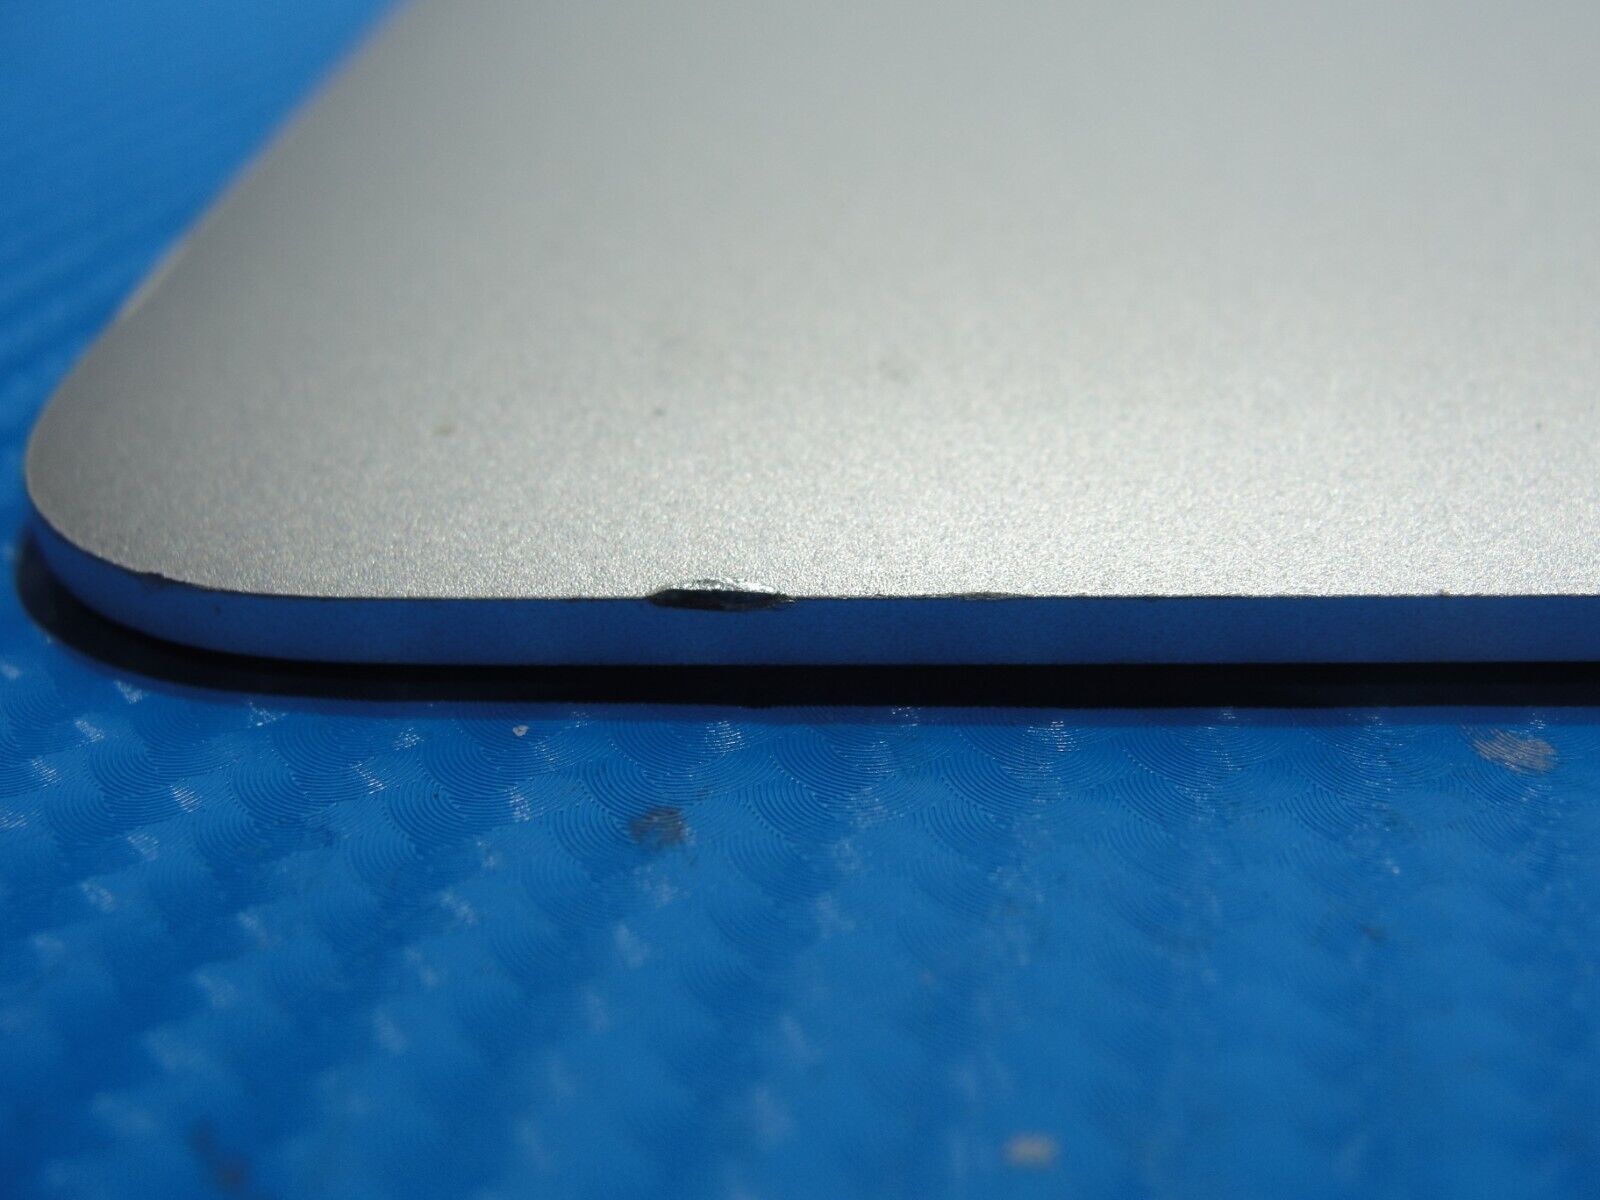 MacBook Pro A1502 2015 13